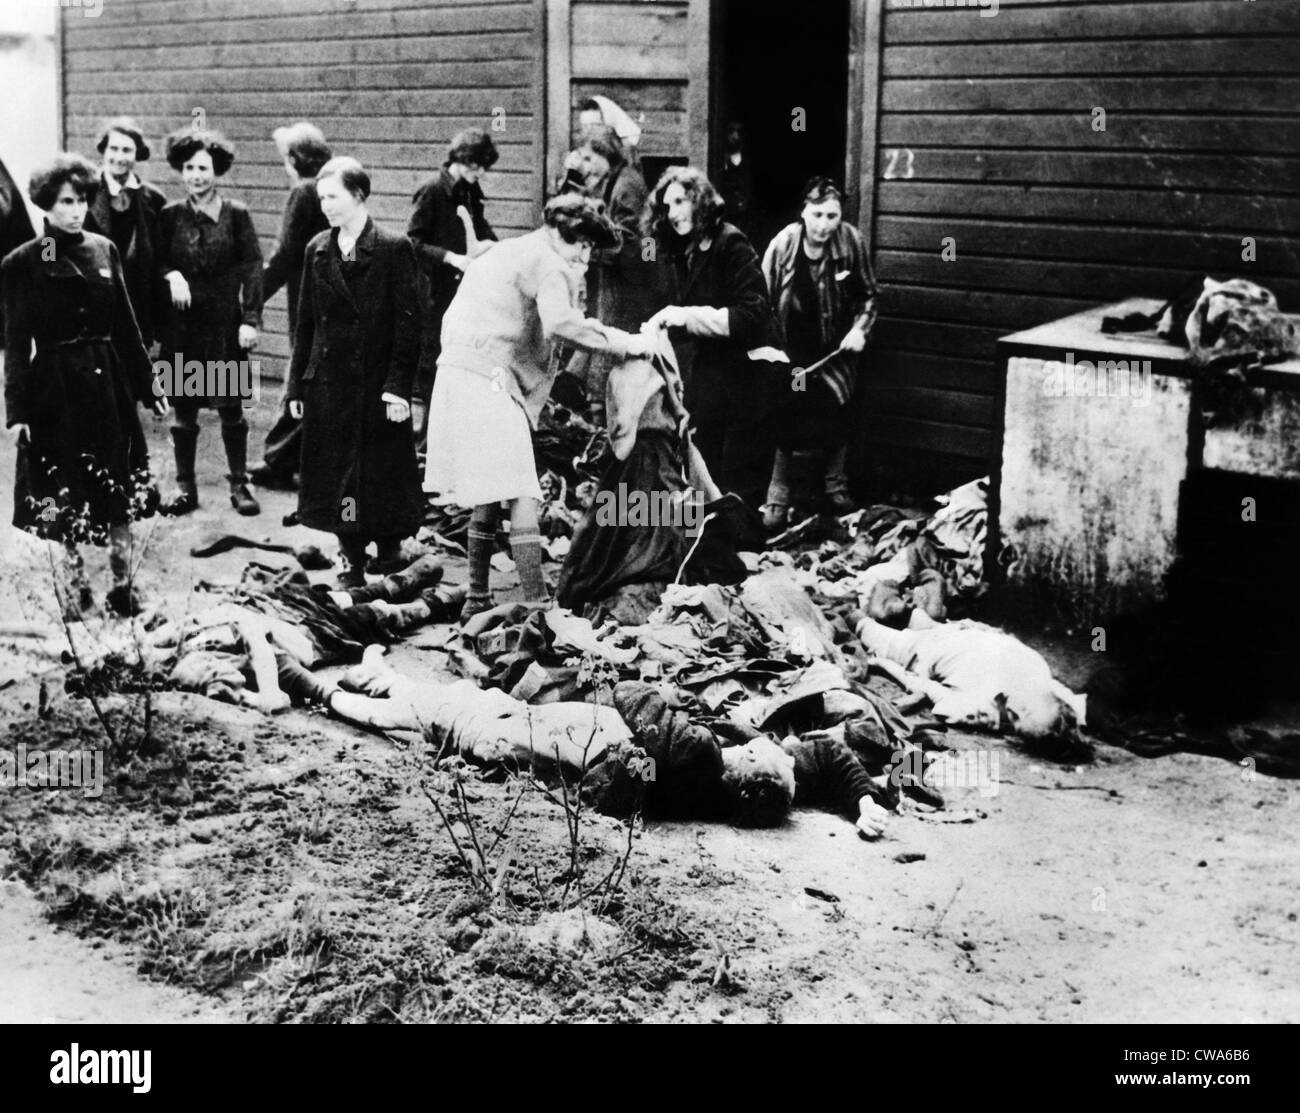 Deutsche Frauen nehmen Sie Kleidung von den Opfern im Konzentrationslager Bergen-Belsen. Zivilisten wurden gezwungen, die Gräueltaten dahinter zu sehen Stockfoto